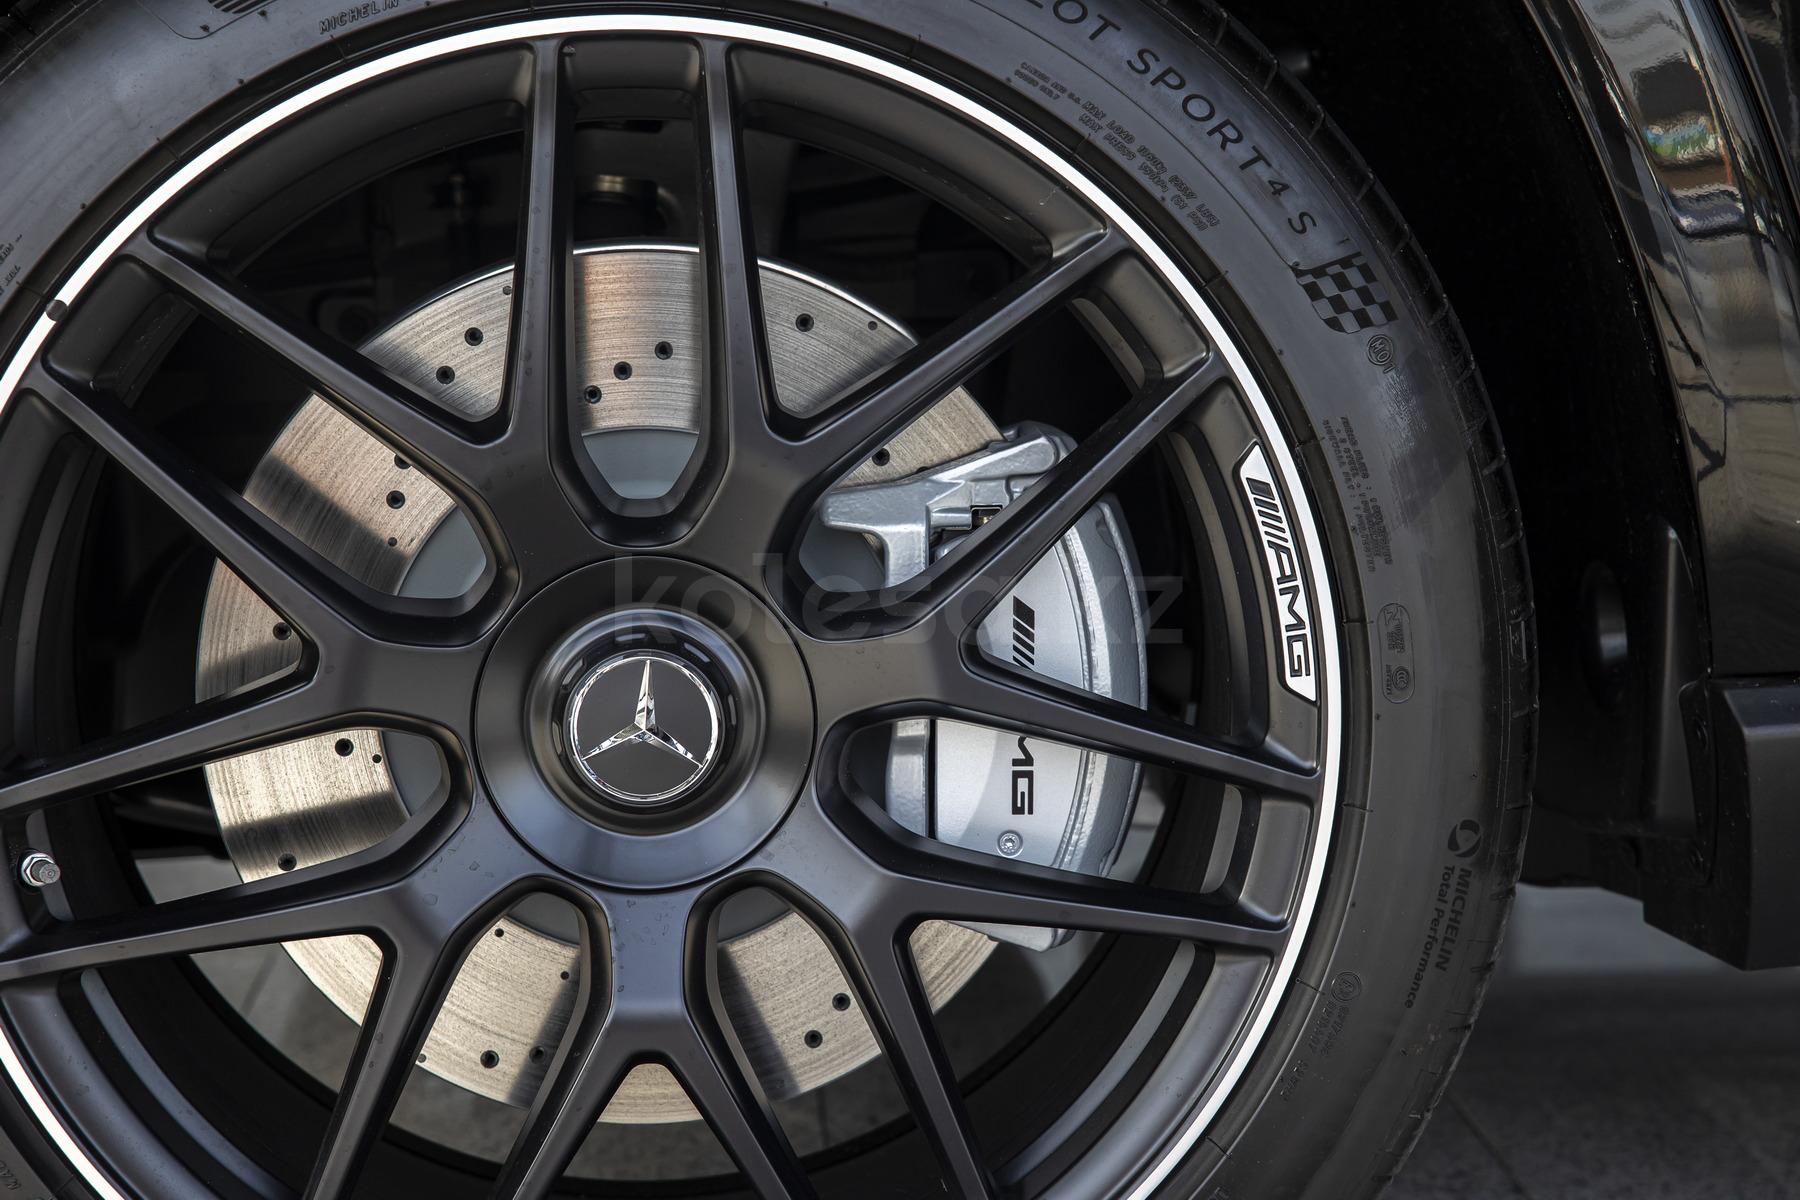 Mercedes-Benz GLE Coupe SUV 2019 - н.в. года от 48 512 264 тенге